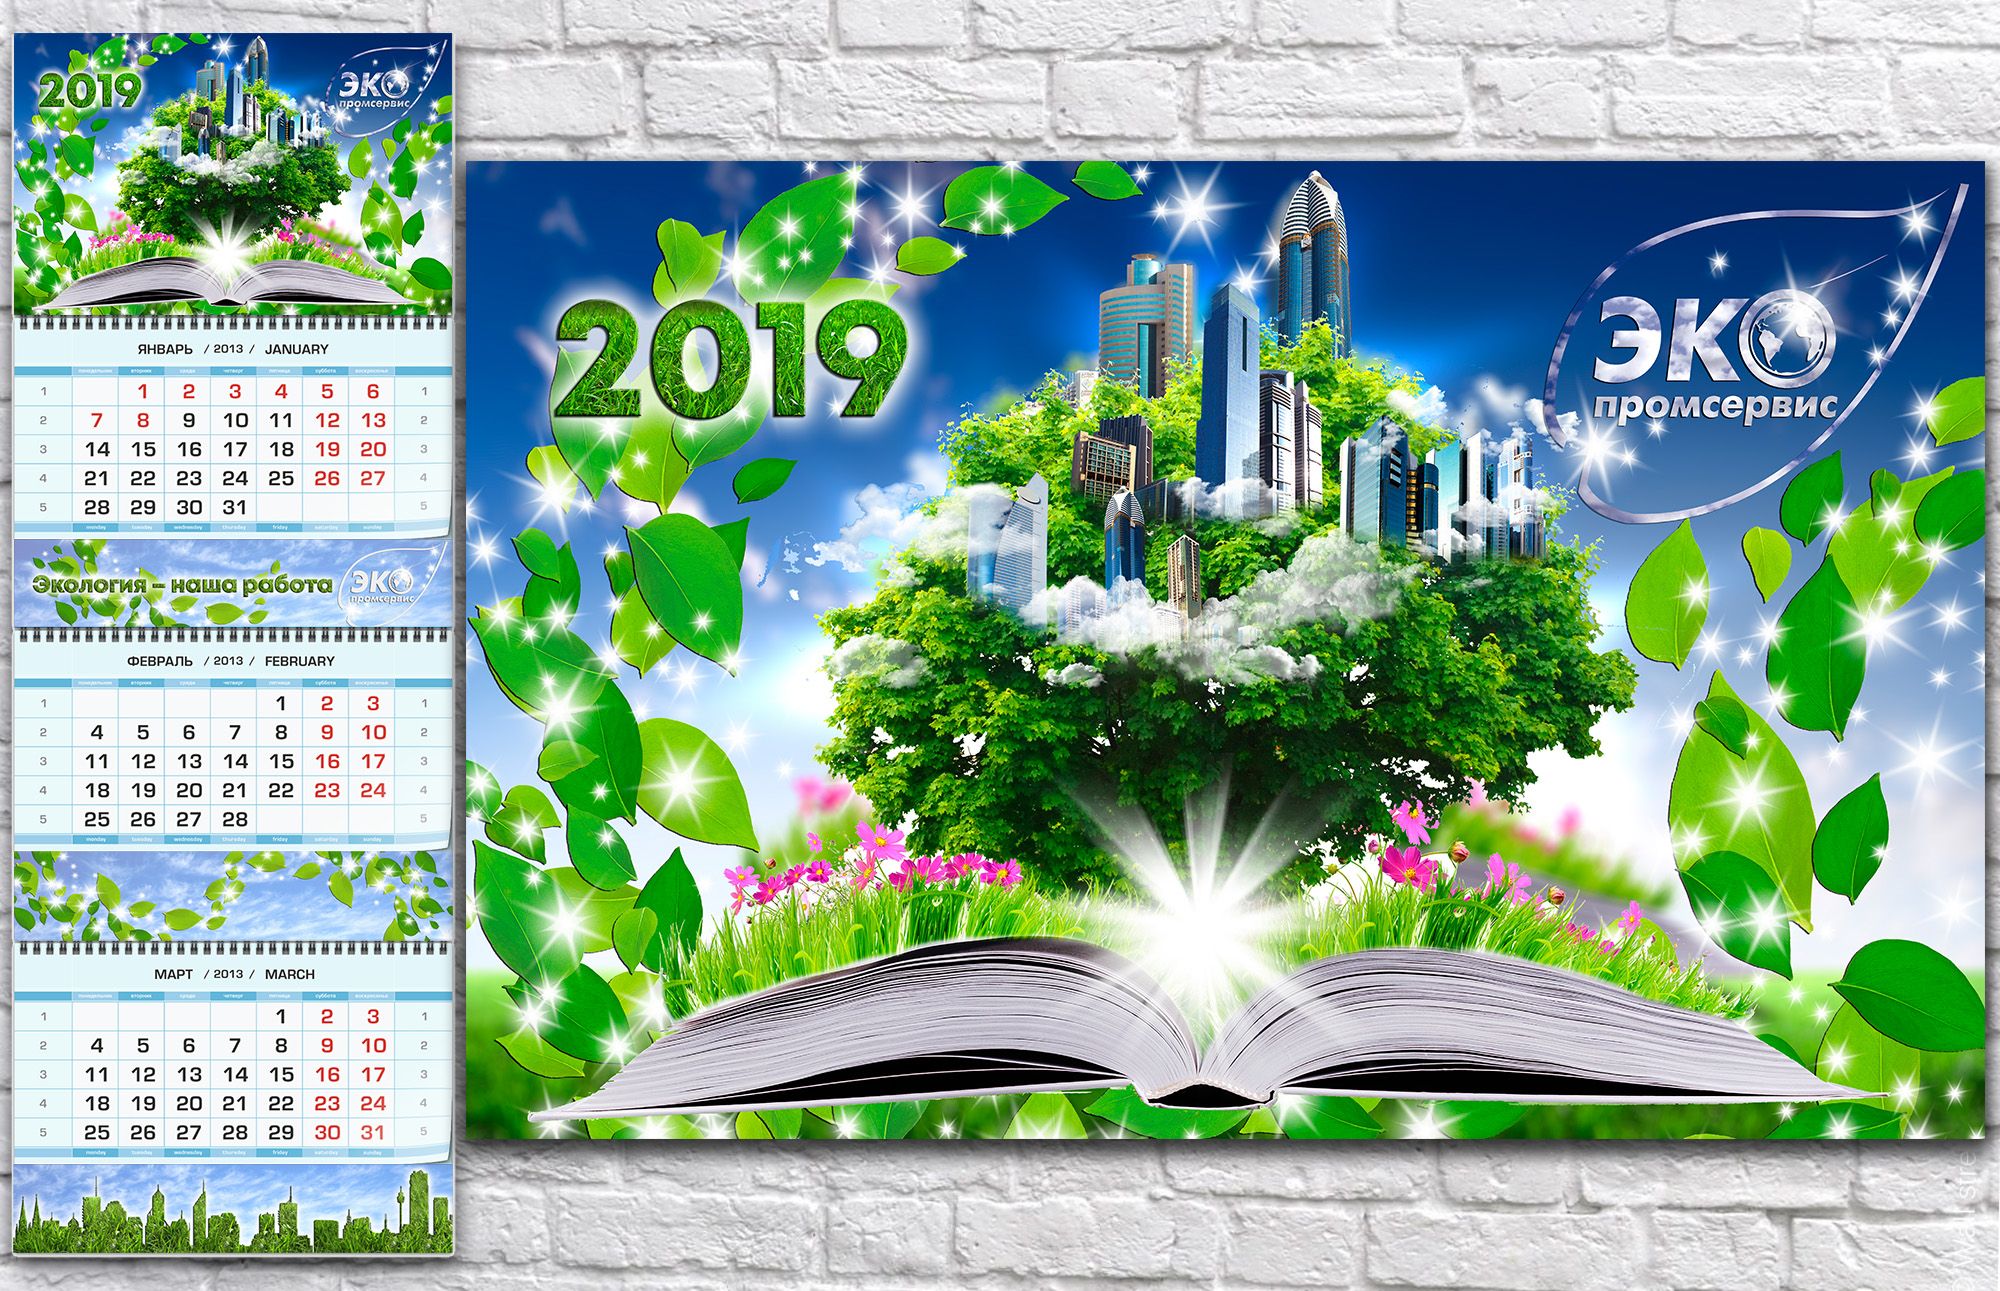 Иллюстрация для 2019 корпоративный календарь, блокнот - дизайнер magistranto4ka